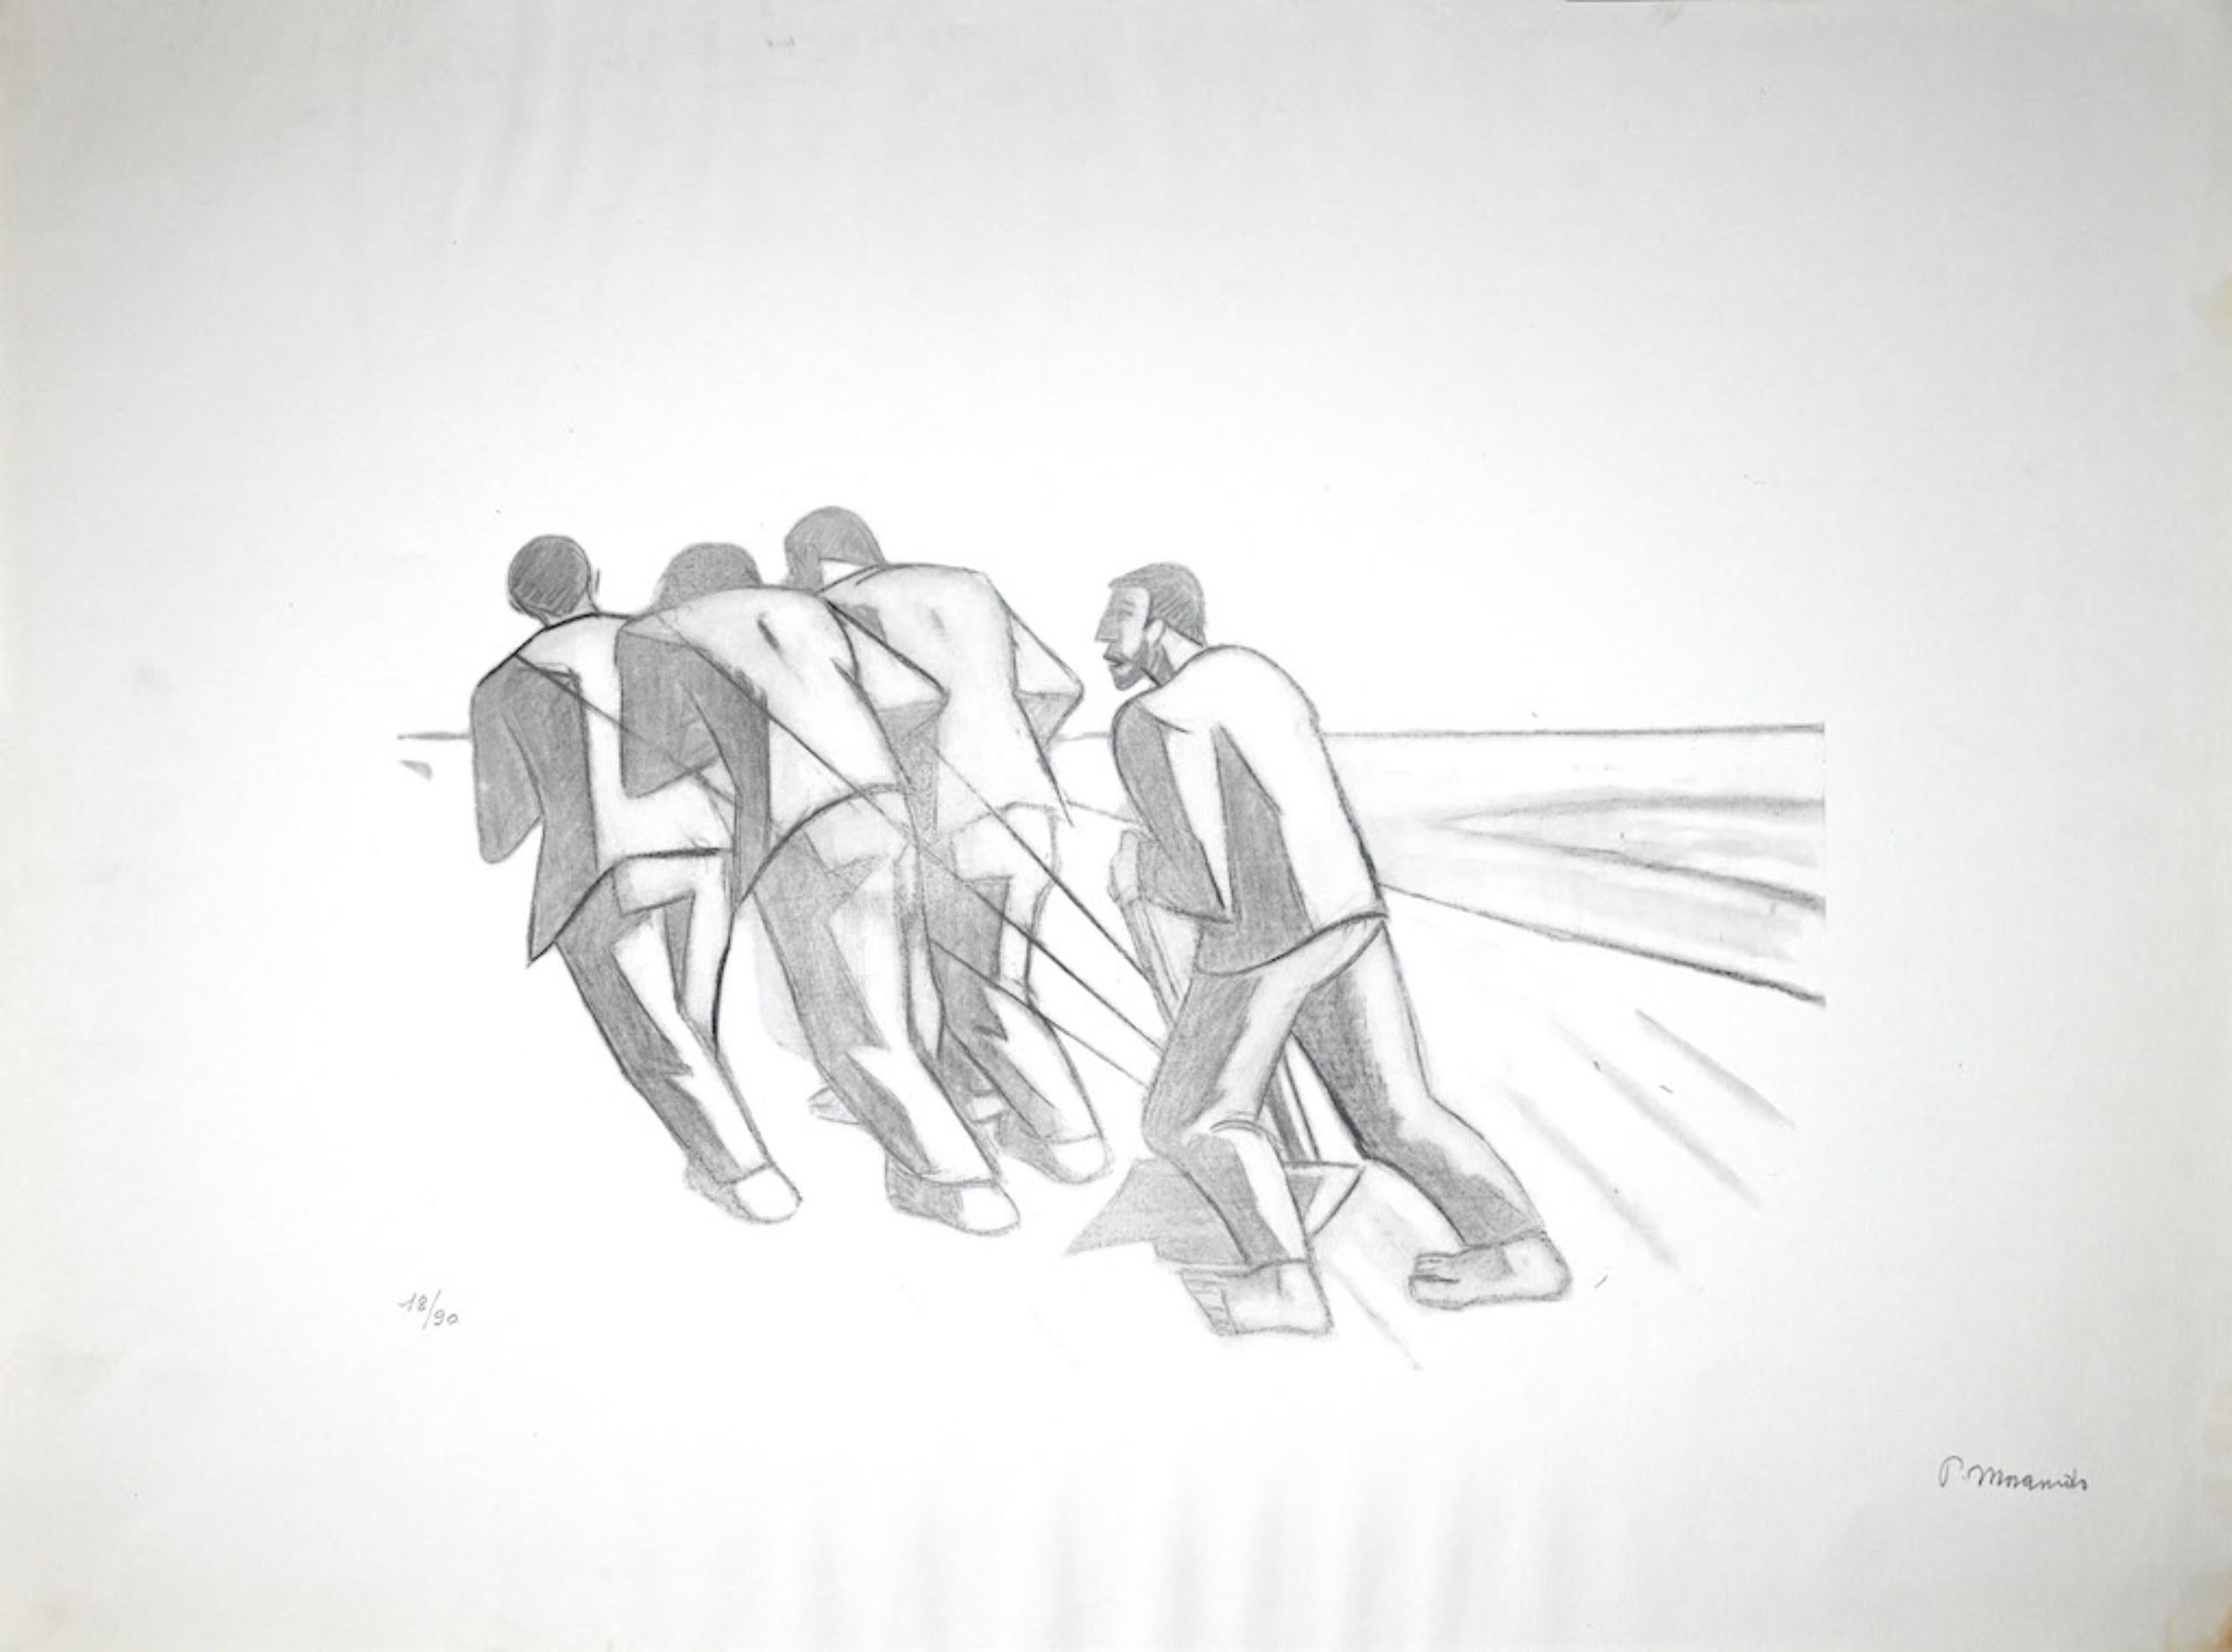 Uomini bue è un'opera d'arte originale realizzata dall'artista italiano Pietro Morando (Alessandria 1889- 1980).

Litografia originale. 

Buone condizioni, tranne qualche traccia di piegatura.

Firmato a mano in basso a destra a matita. Numerata in